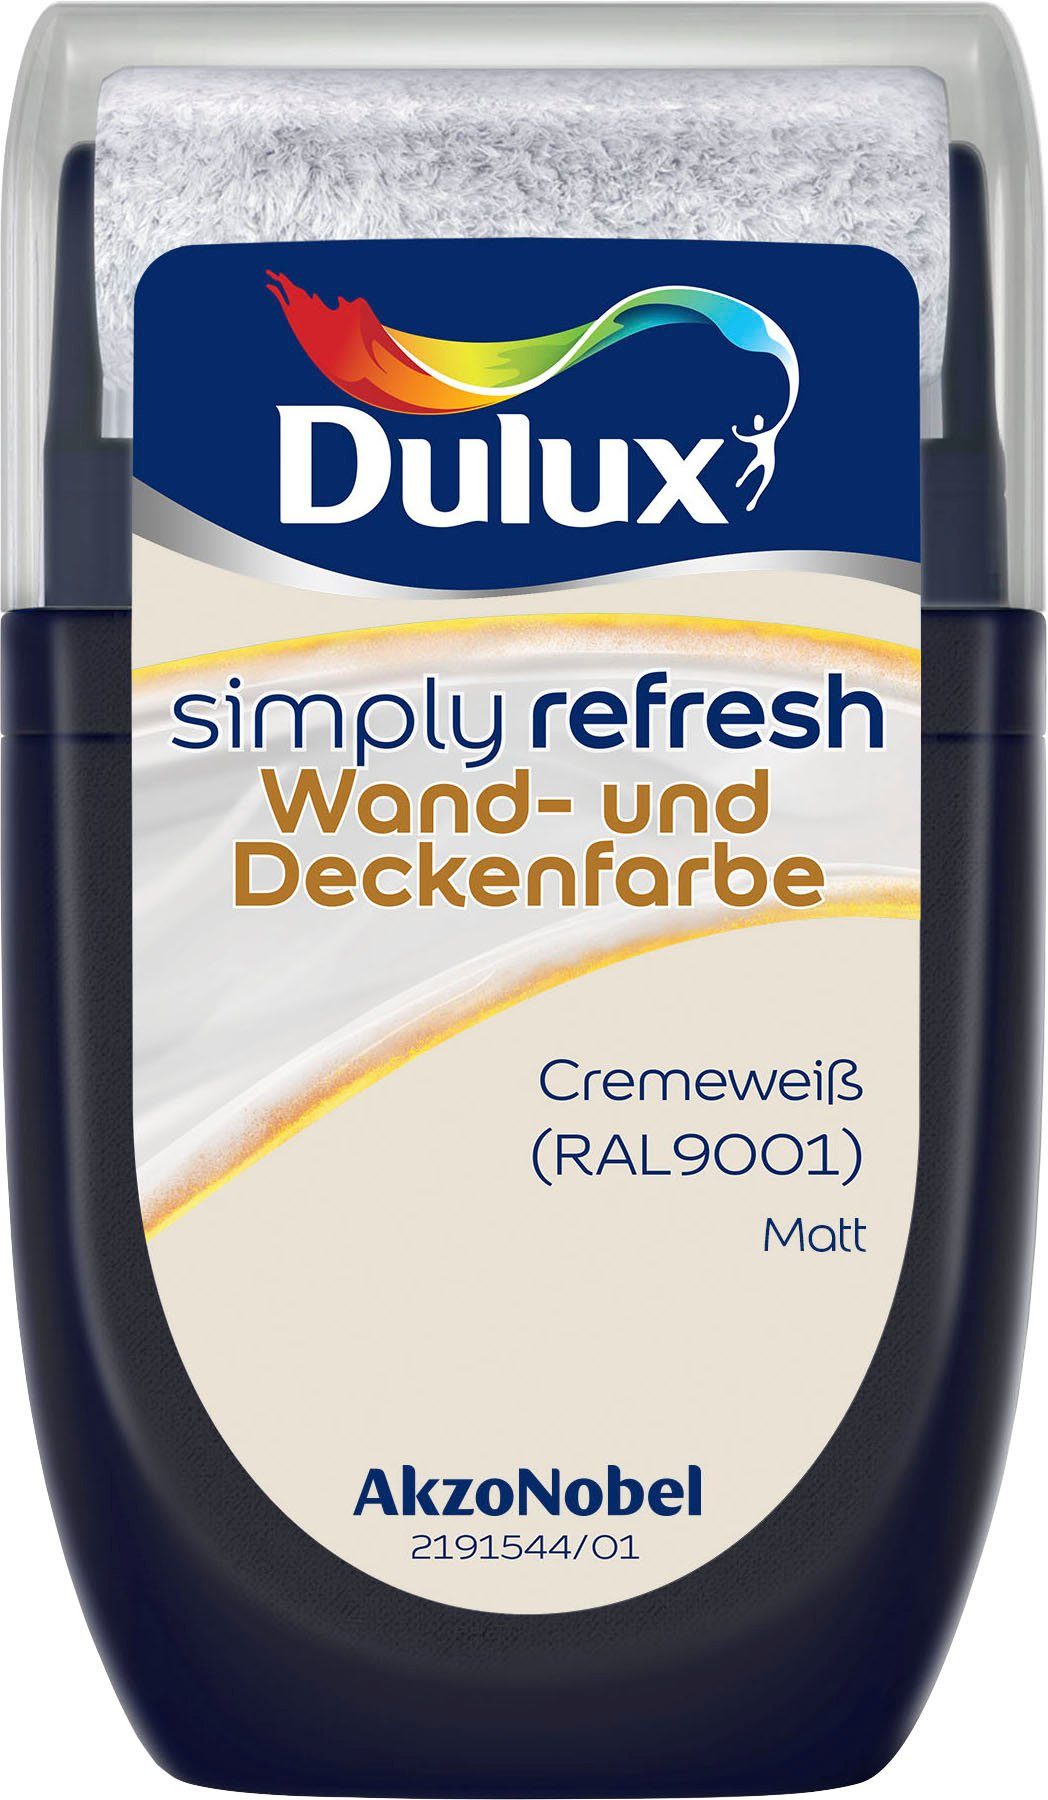 Dulux Wand- und Deckenfarbe Tester, (RAL9001) matt, Cremeweiss hochdeckend, Refresh, ml 30 Simply